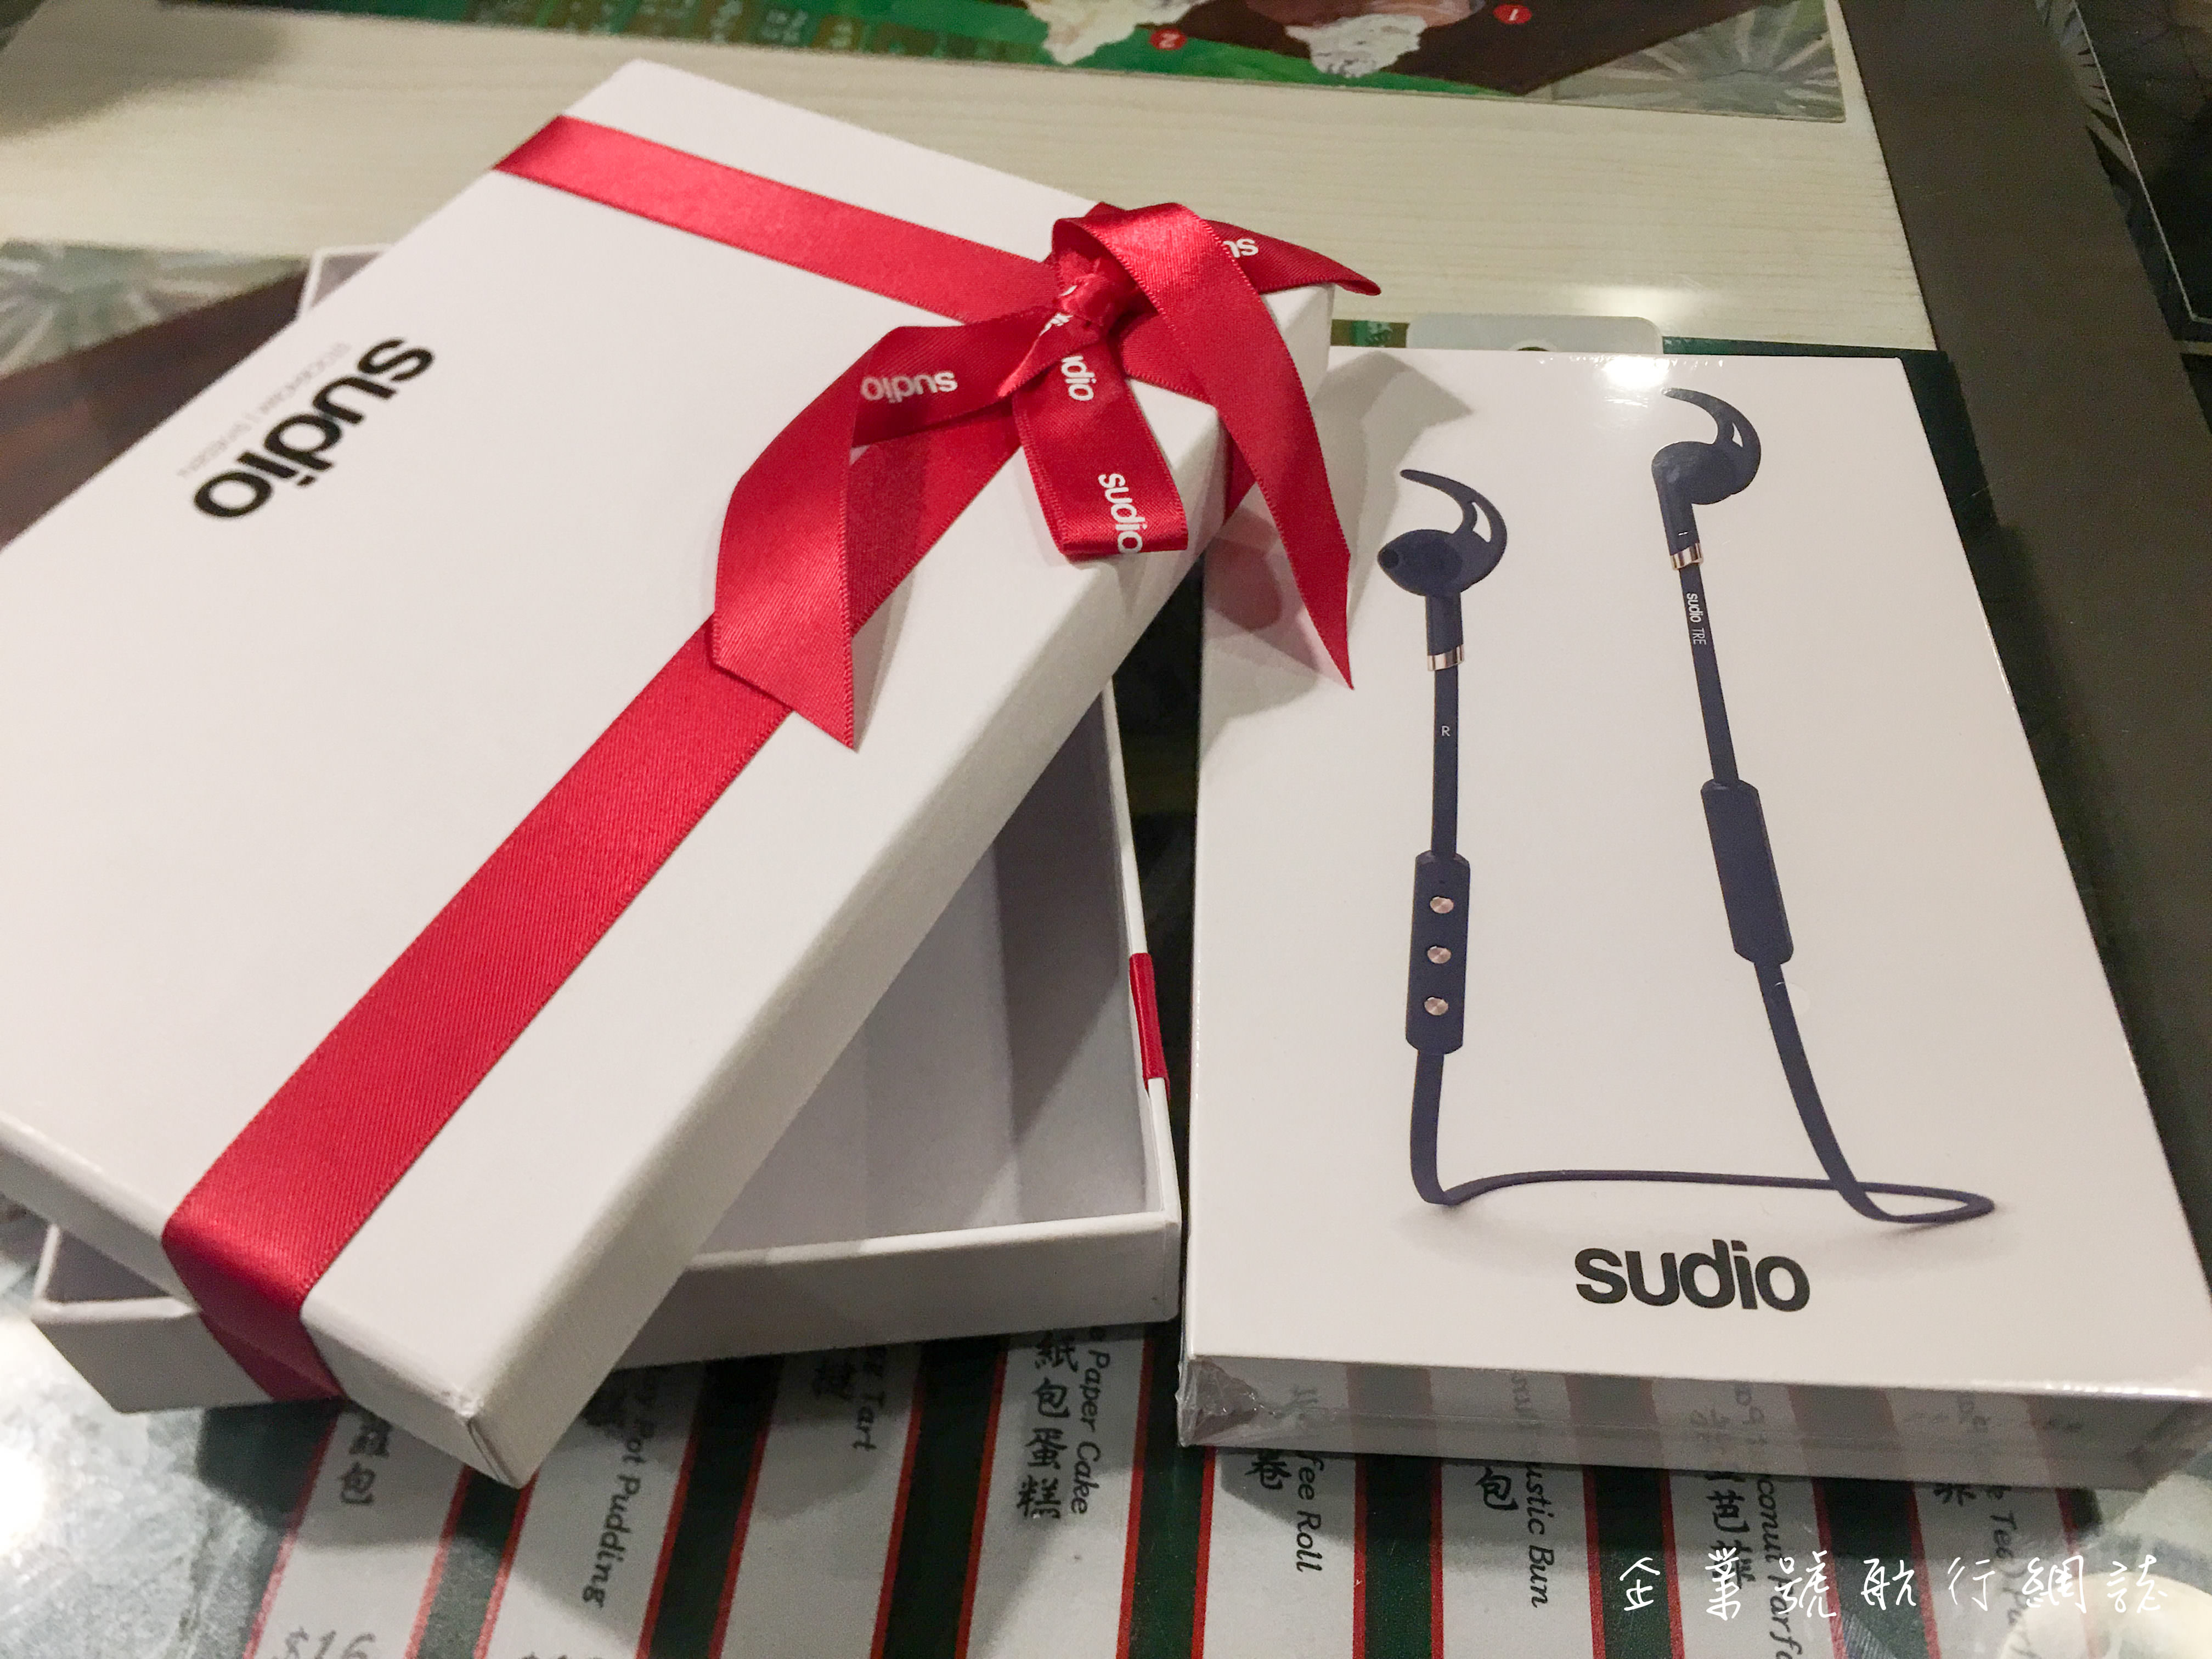 【評測】來自瑞典的運動耳機 – Sudio Tre